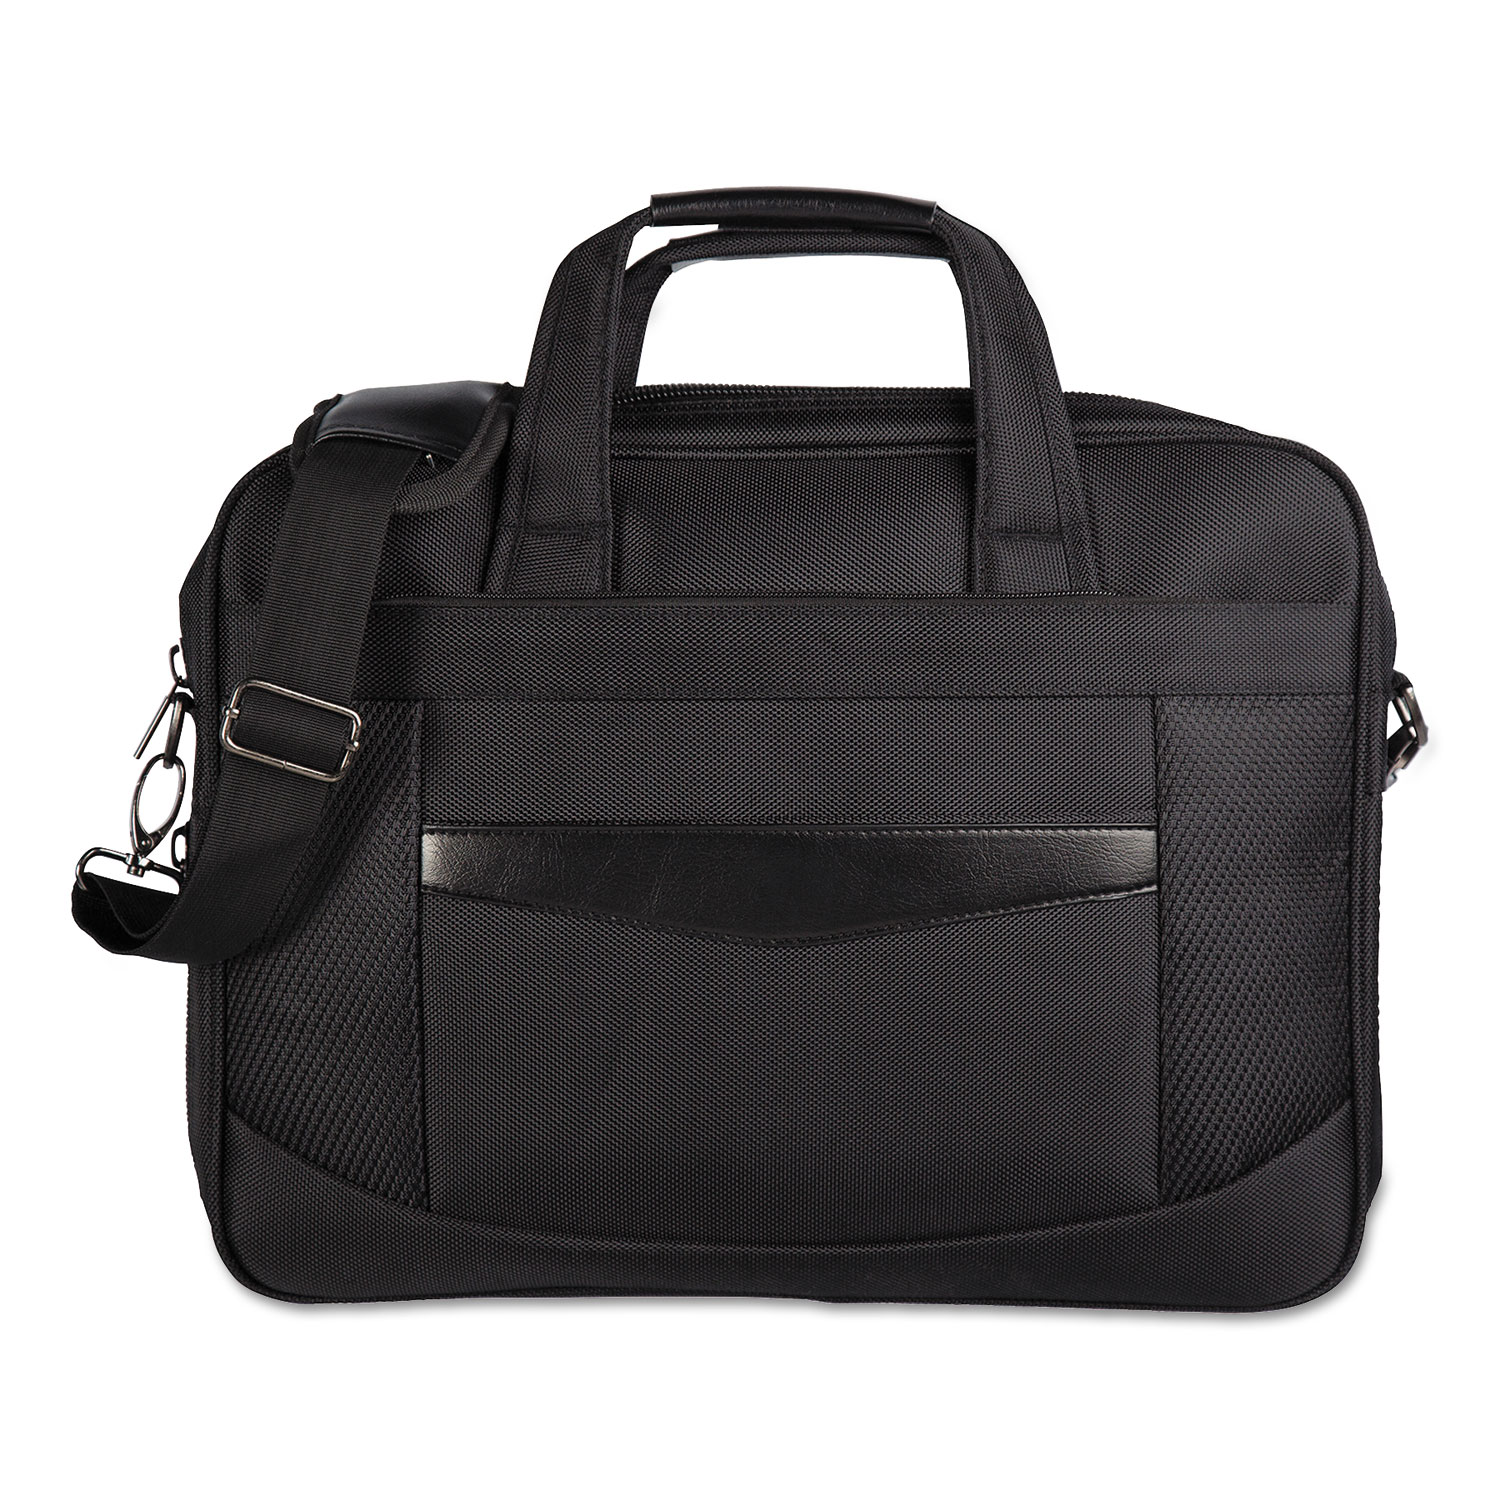 Gregory Convertible Executive Briefcase, 16.25 x 4.25 x 11.5, Nylon, Black